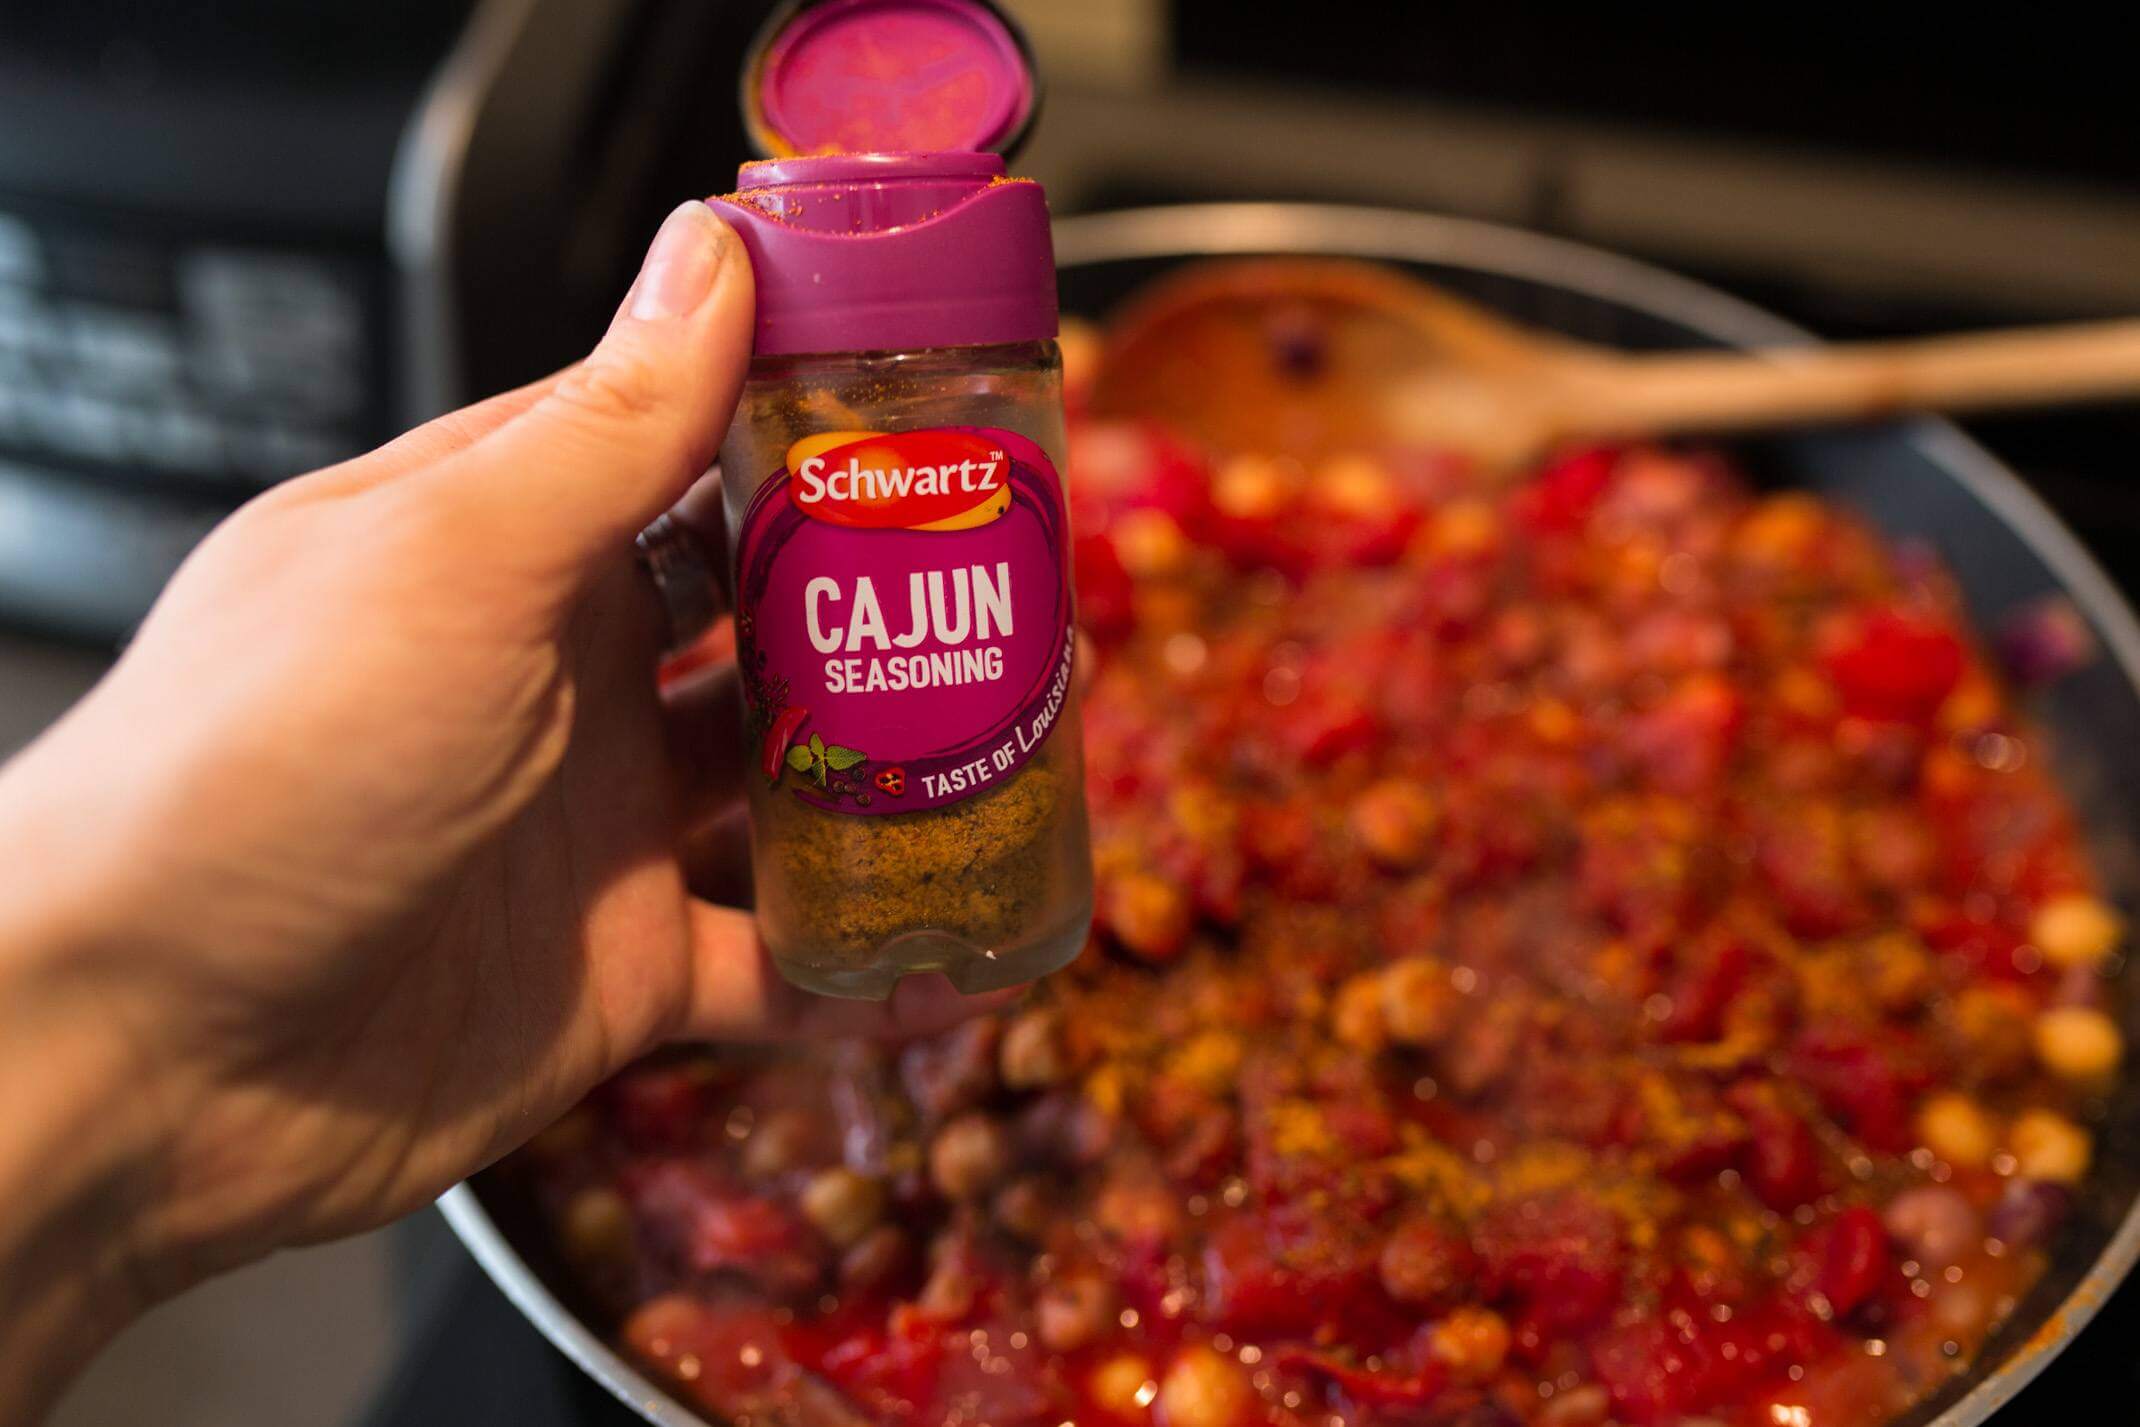 A quick cajun chickpea and tomato dish recipe